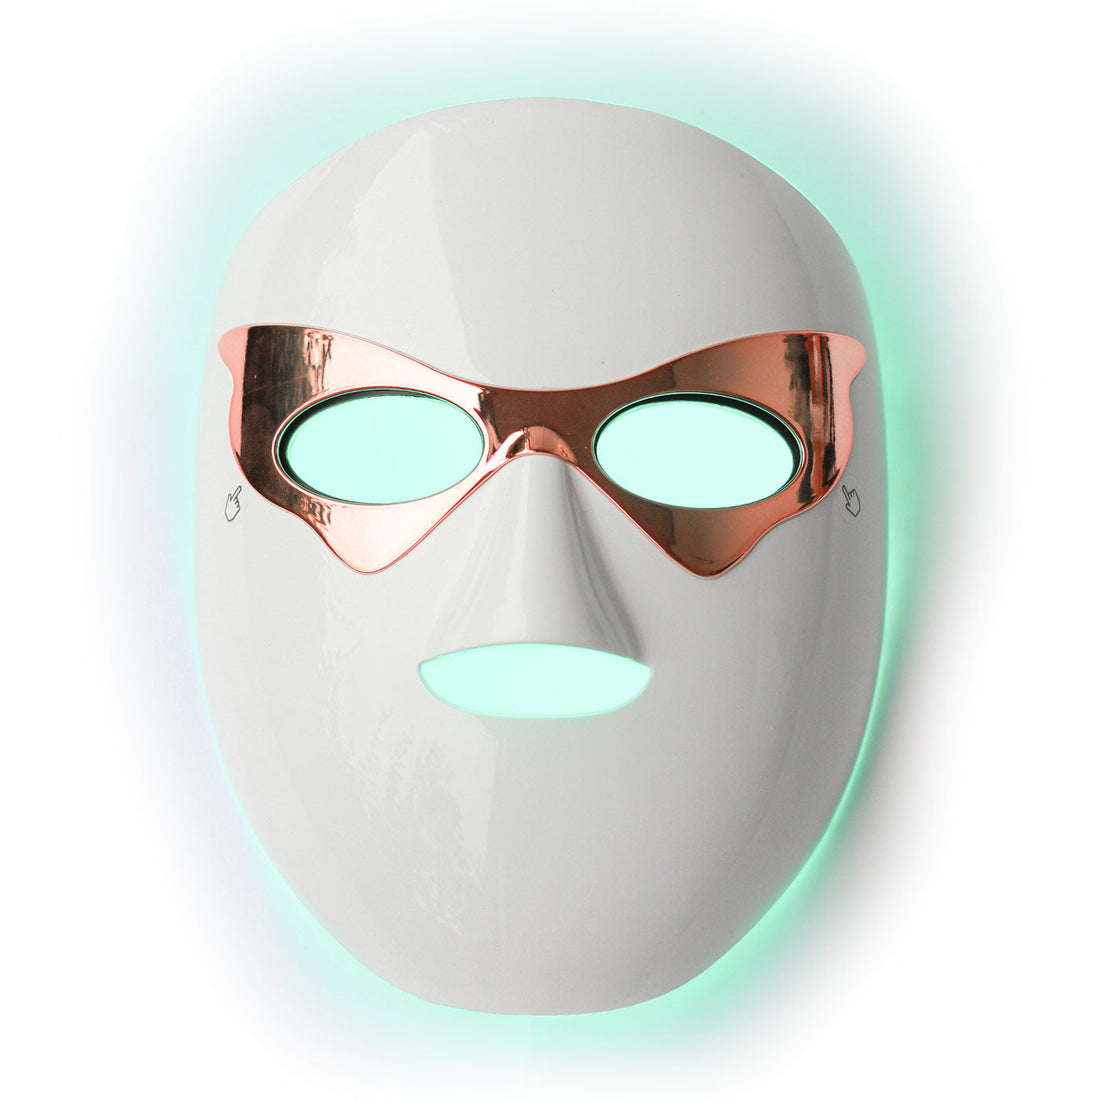 Psoriasis: Hvordan kan vår LED-maske hjelpe deg med psoriasis?